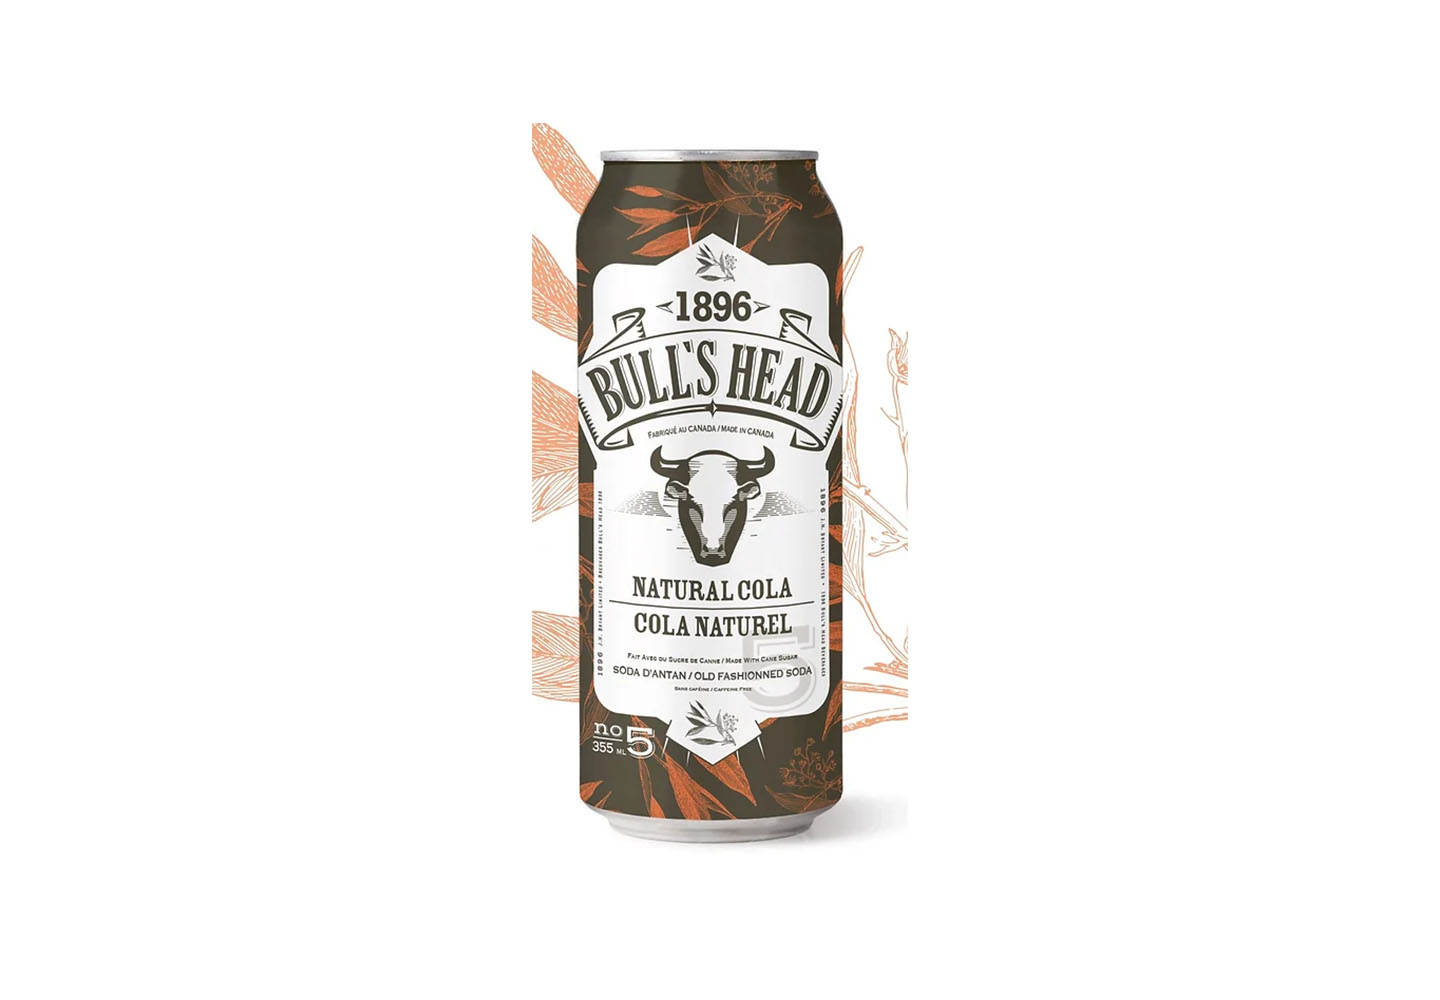 Cola naturel – Bull’s Head